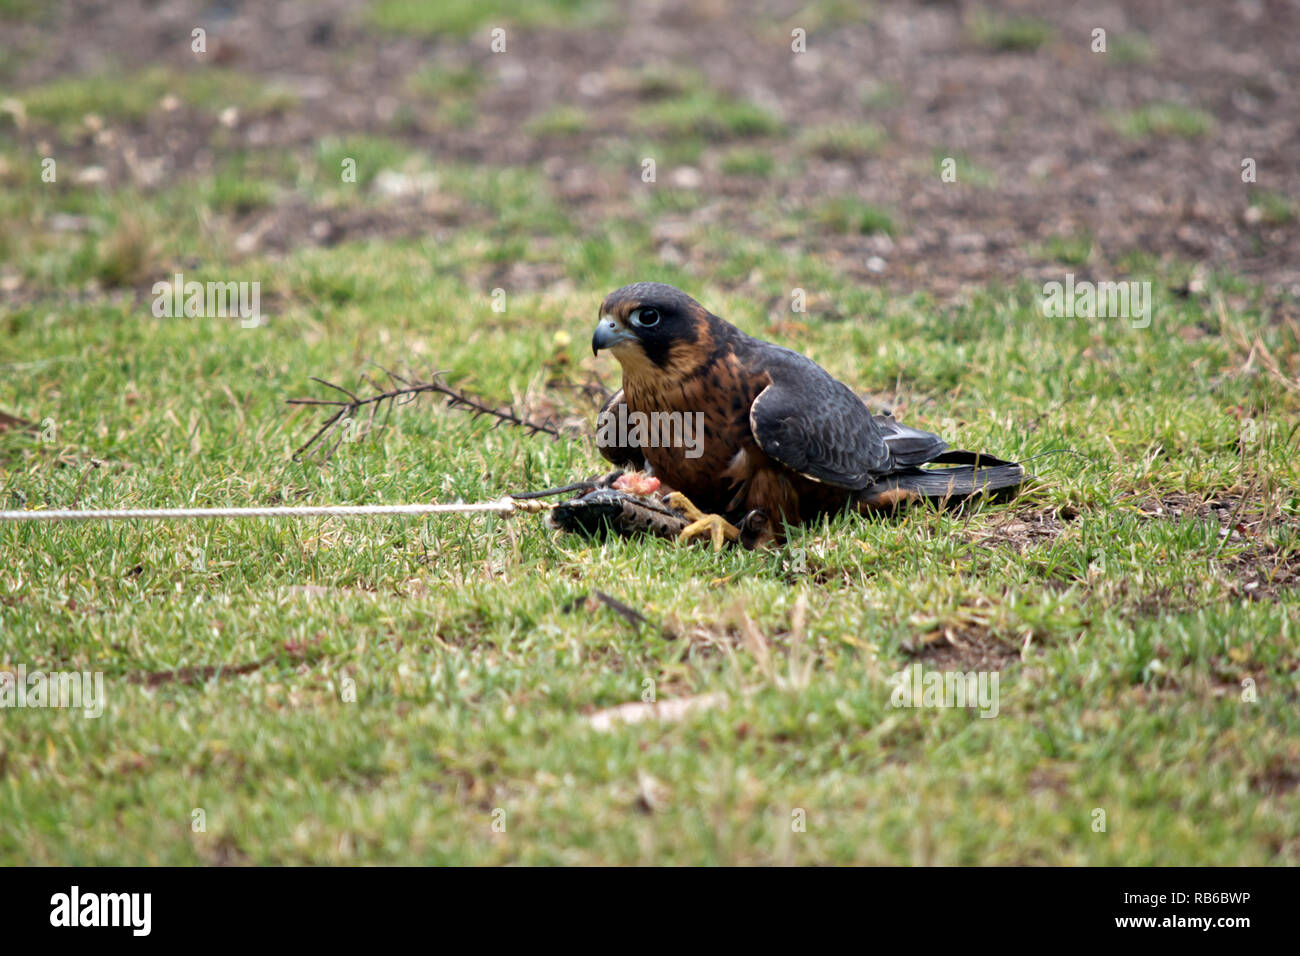 Die Australische hobby Falcon hat gerade eine Lore gefangen mit einem Essen behandeln Stockfoto